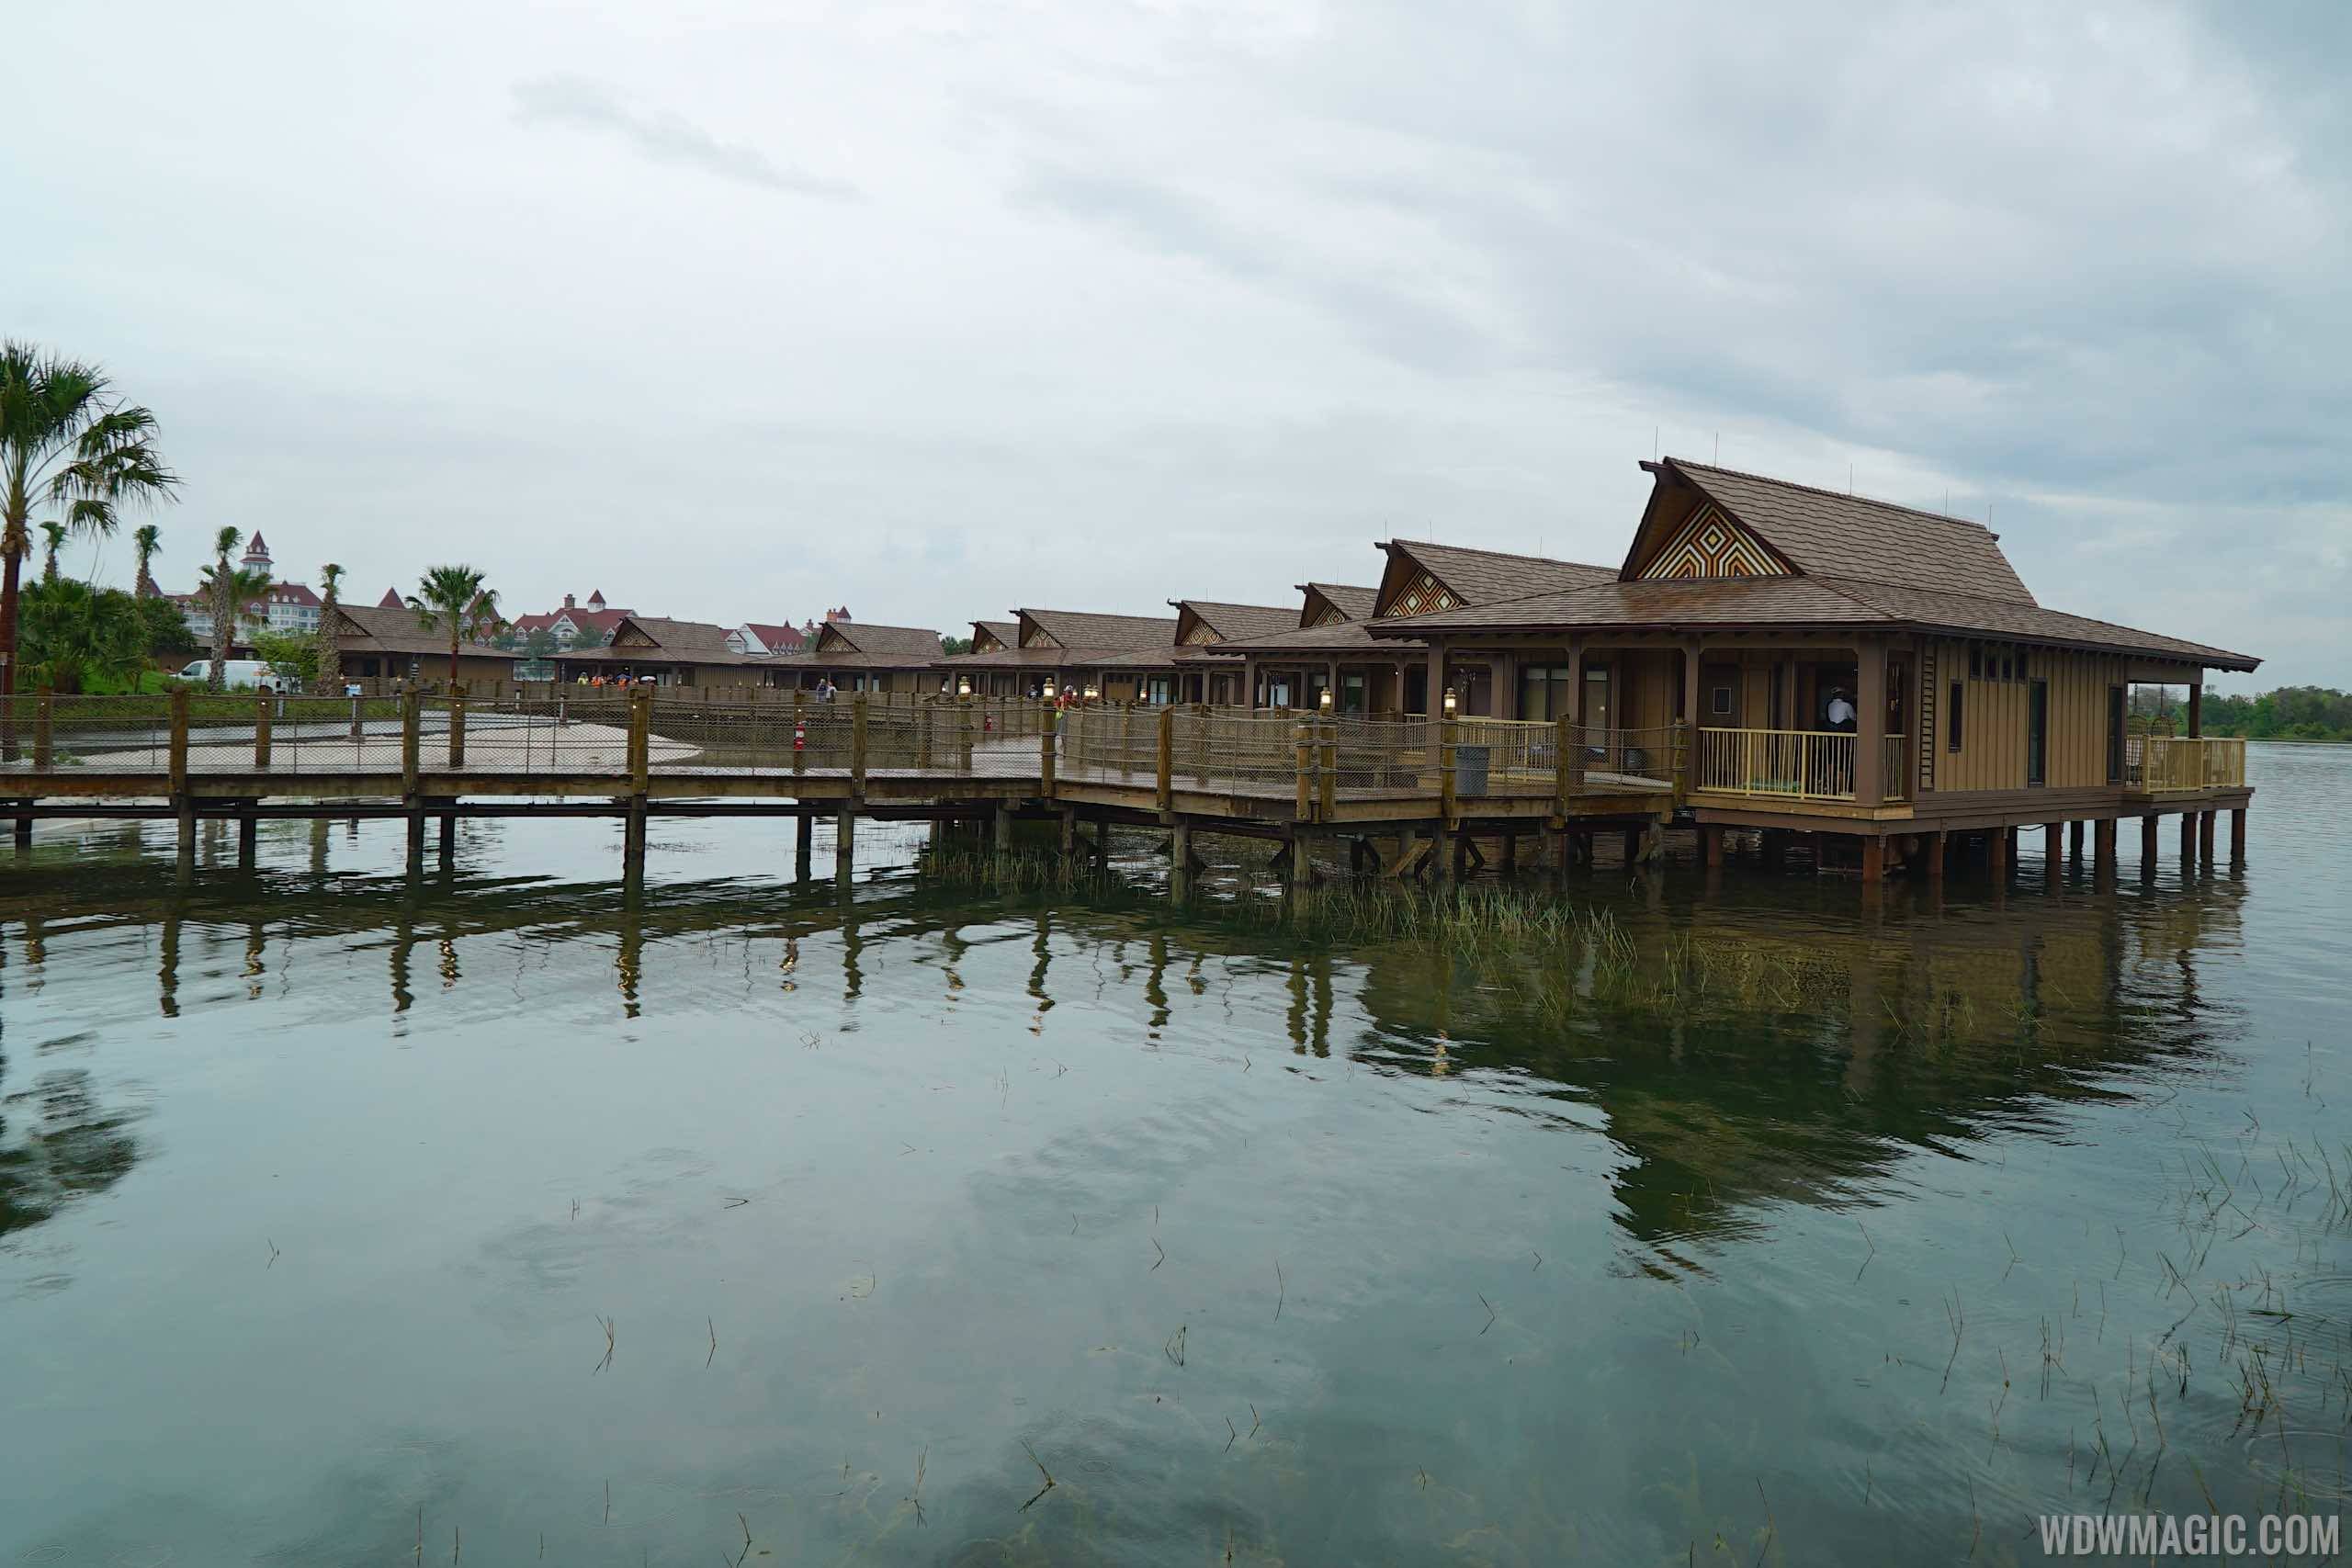 Disney's Polynesian Village Resort Bora Bora Bungalow - View of the bungalows